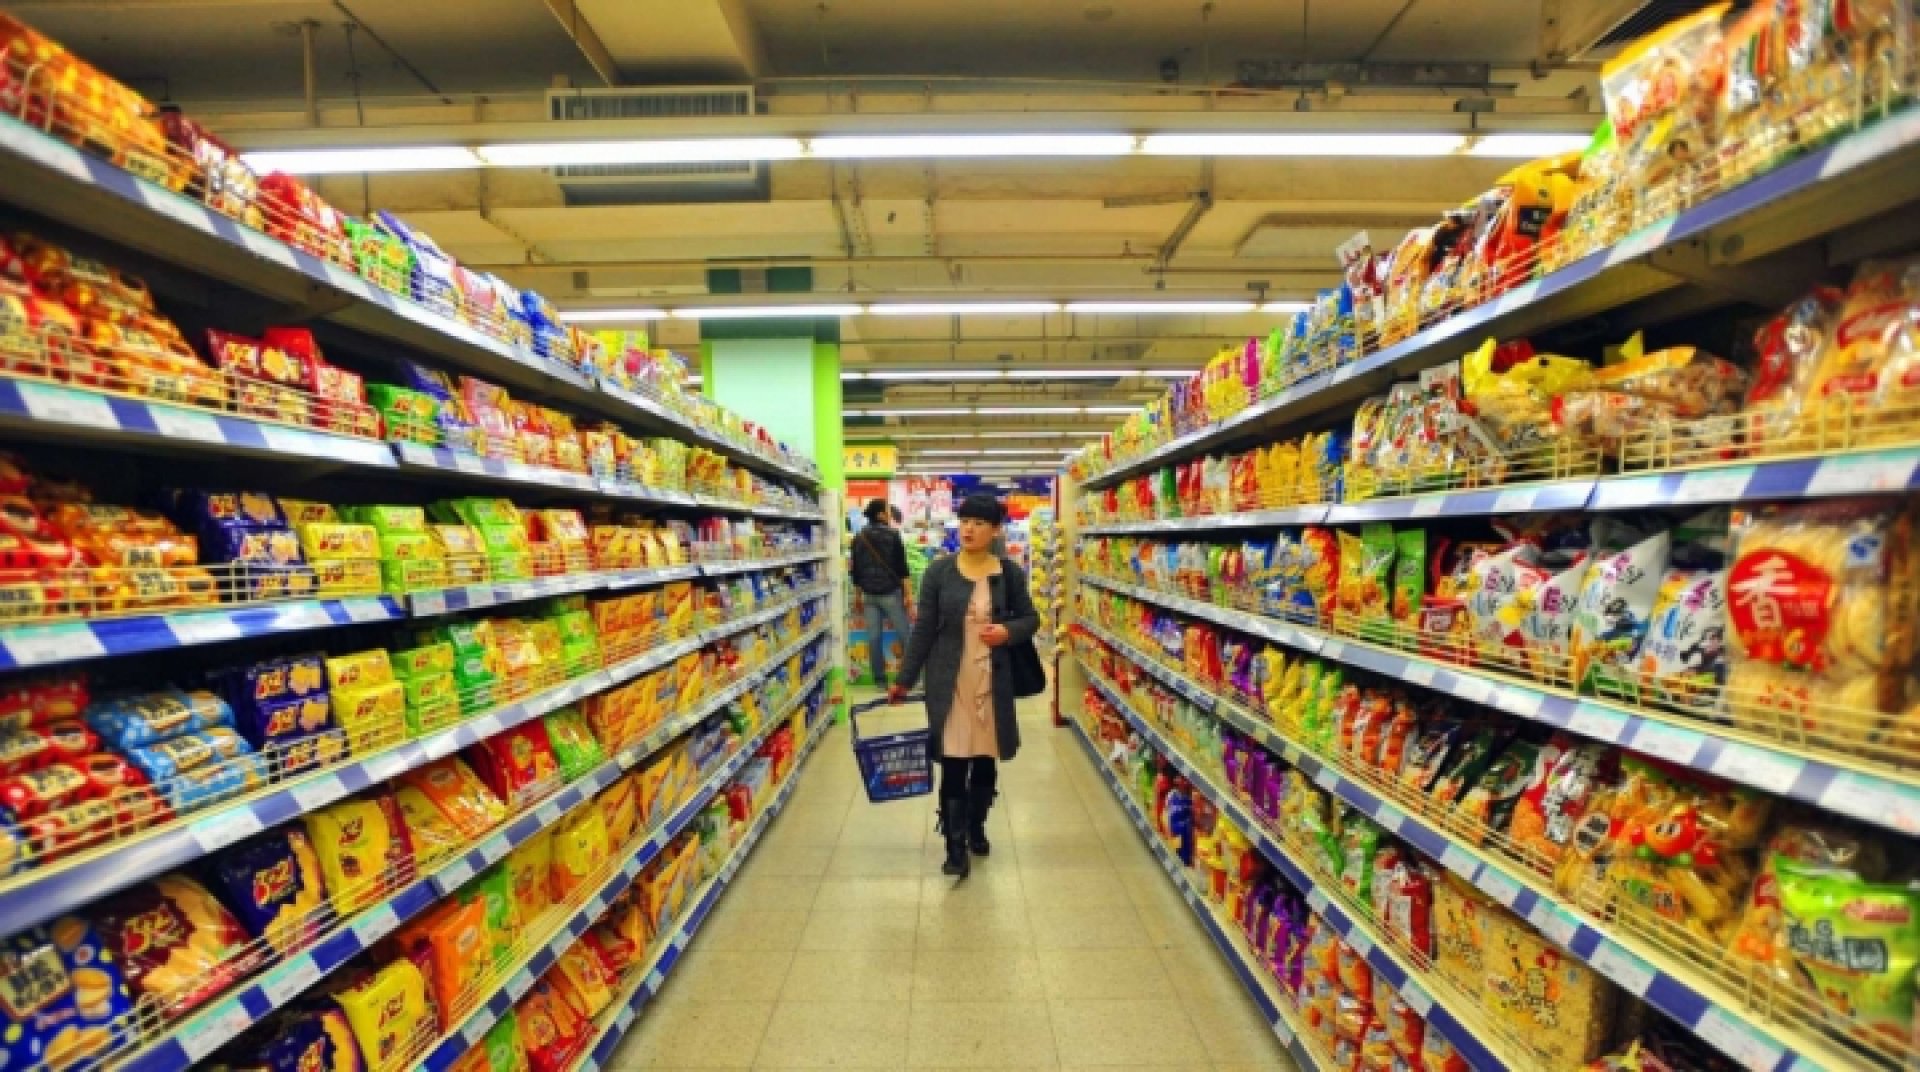 Se prelungeşte plafonarea adaosurilor la preţurile alimentelor de bază